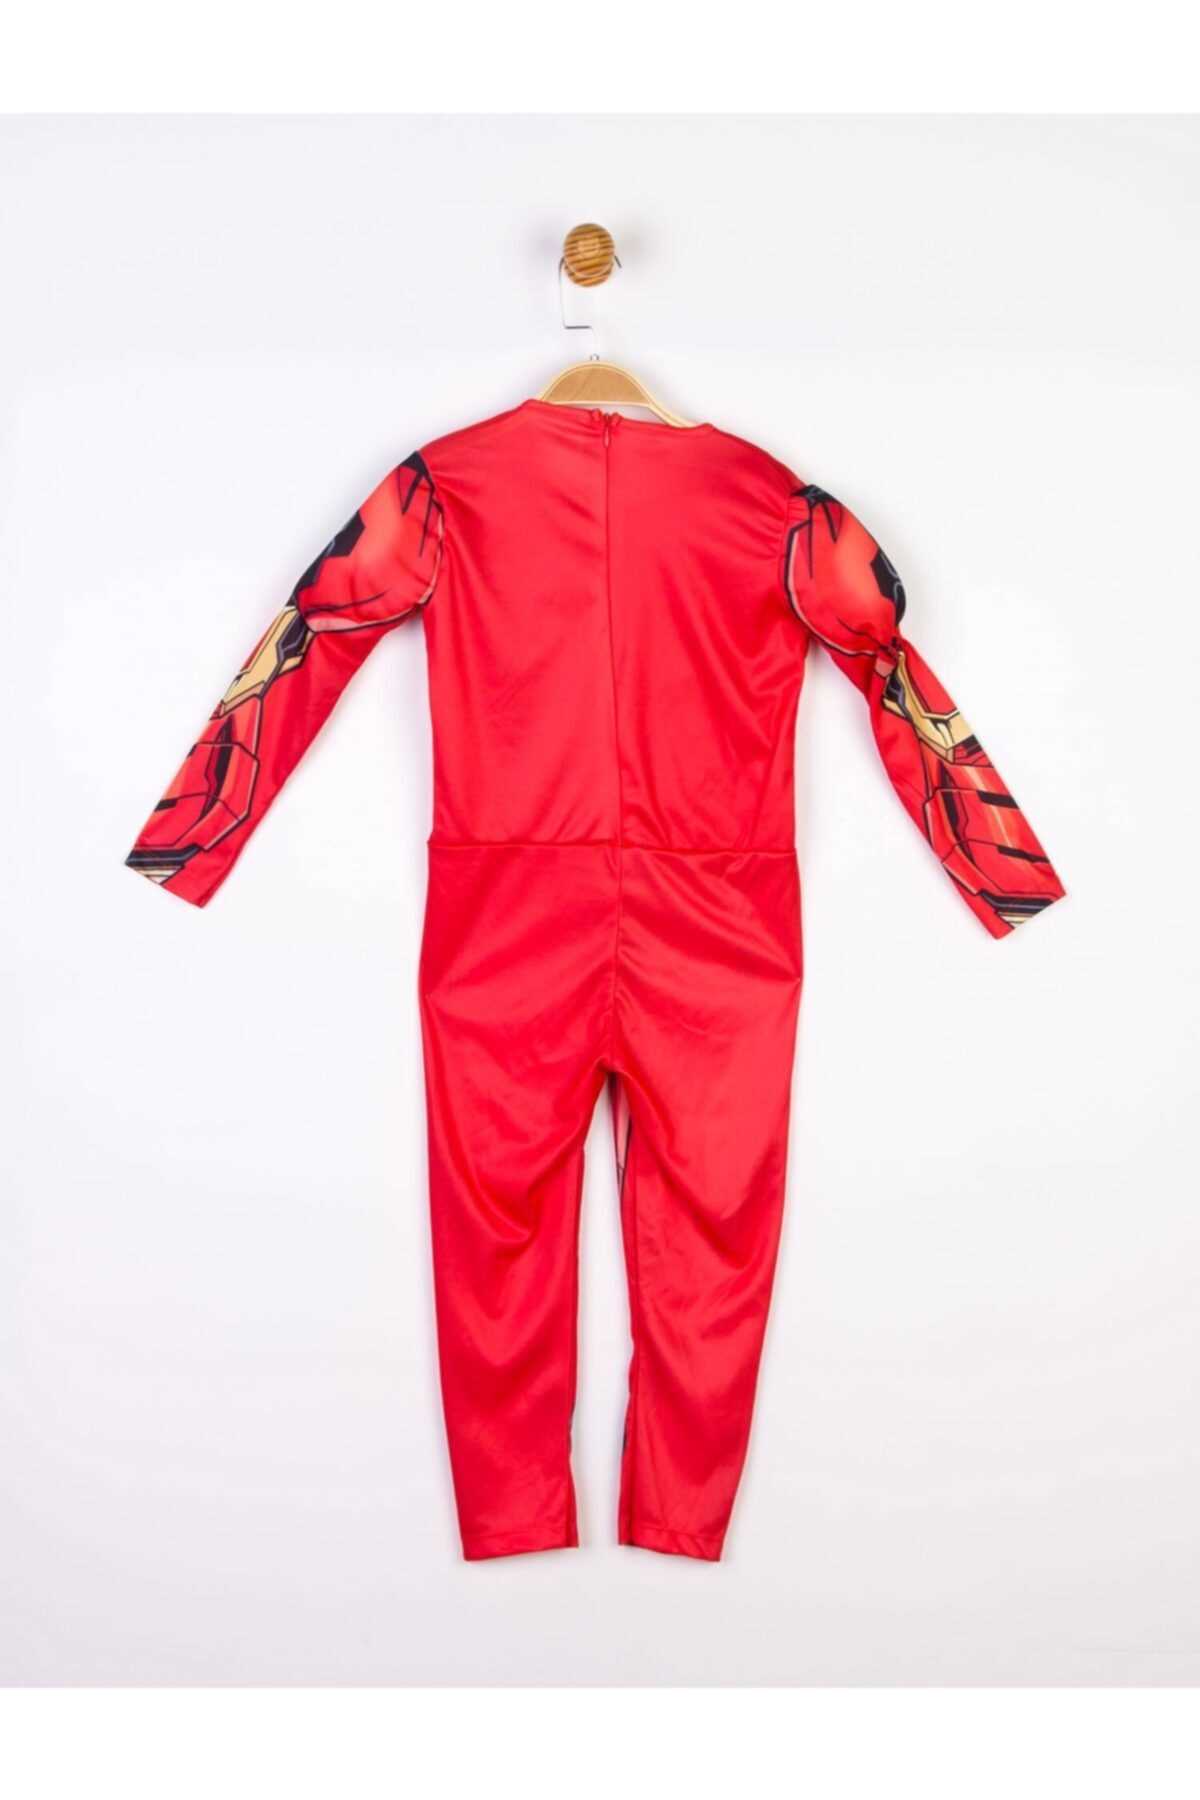 قیمت لباس خاص بچه گانه IRON MAN رنگ قرمز ty62346816